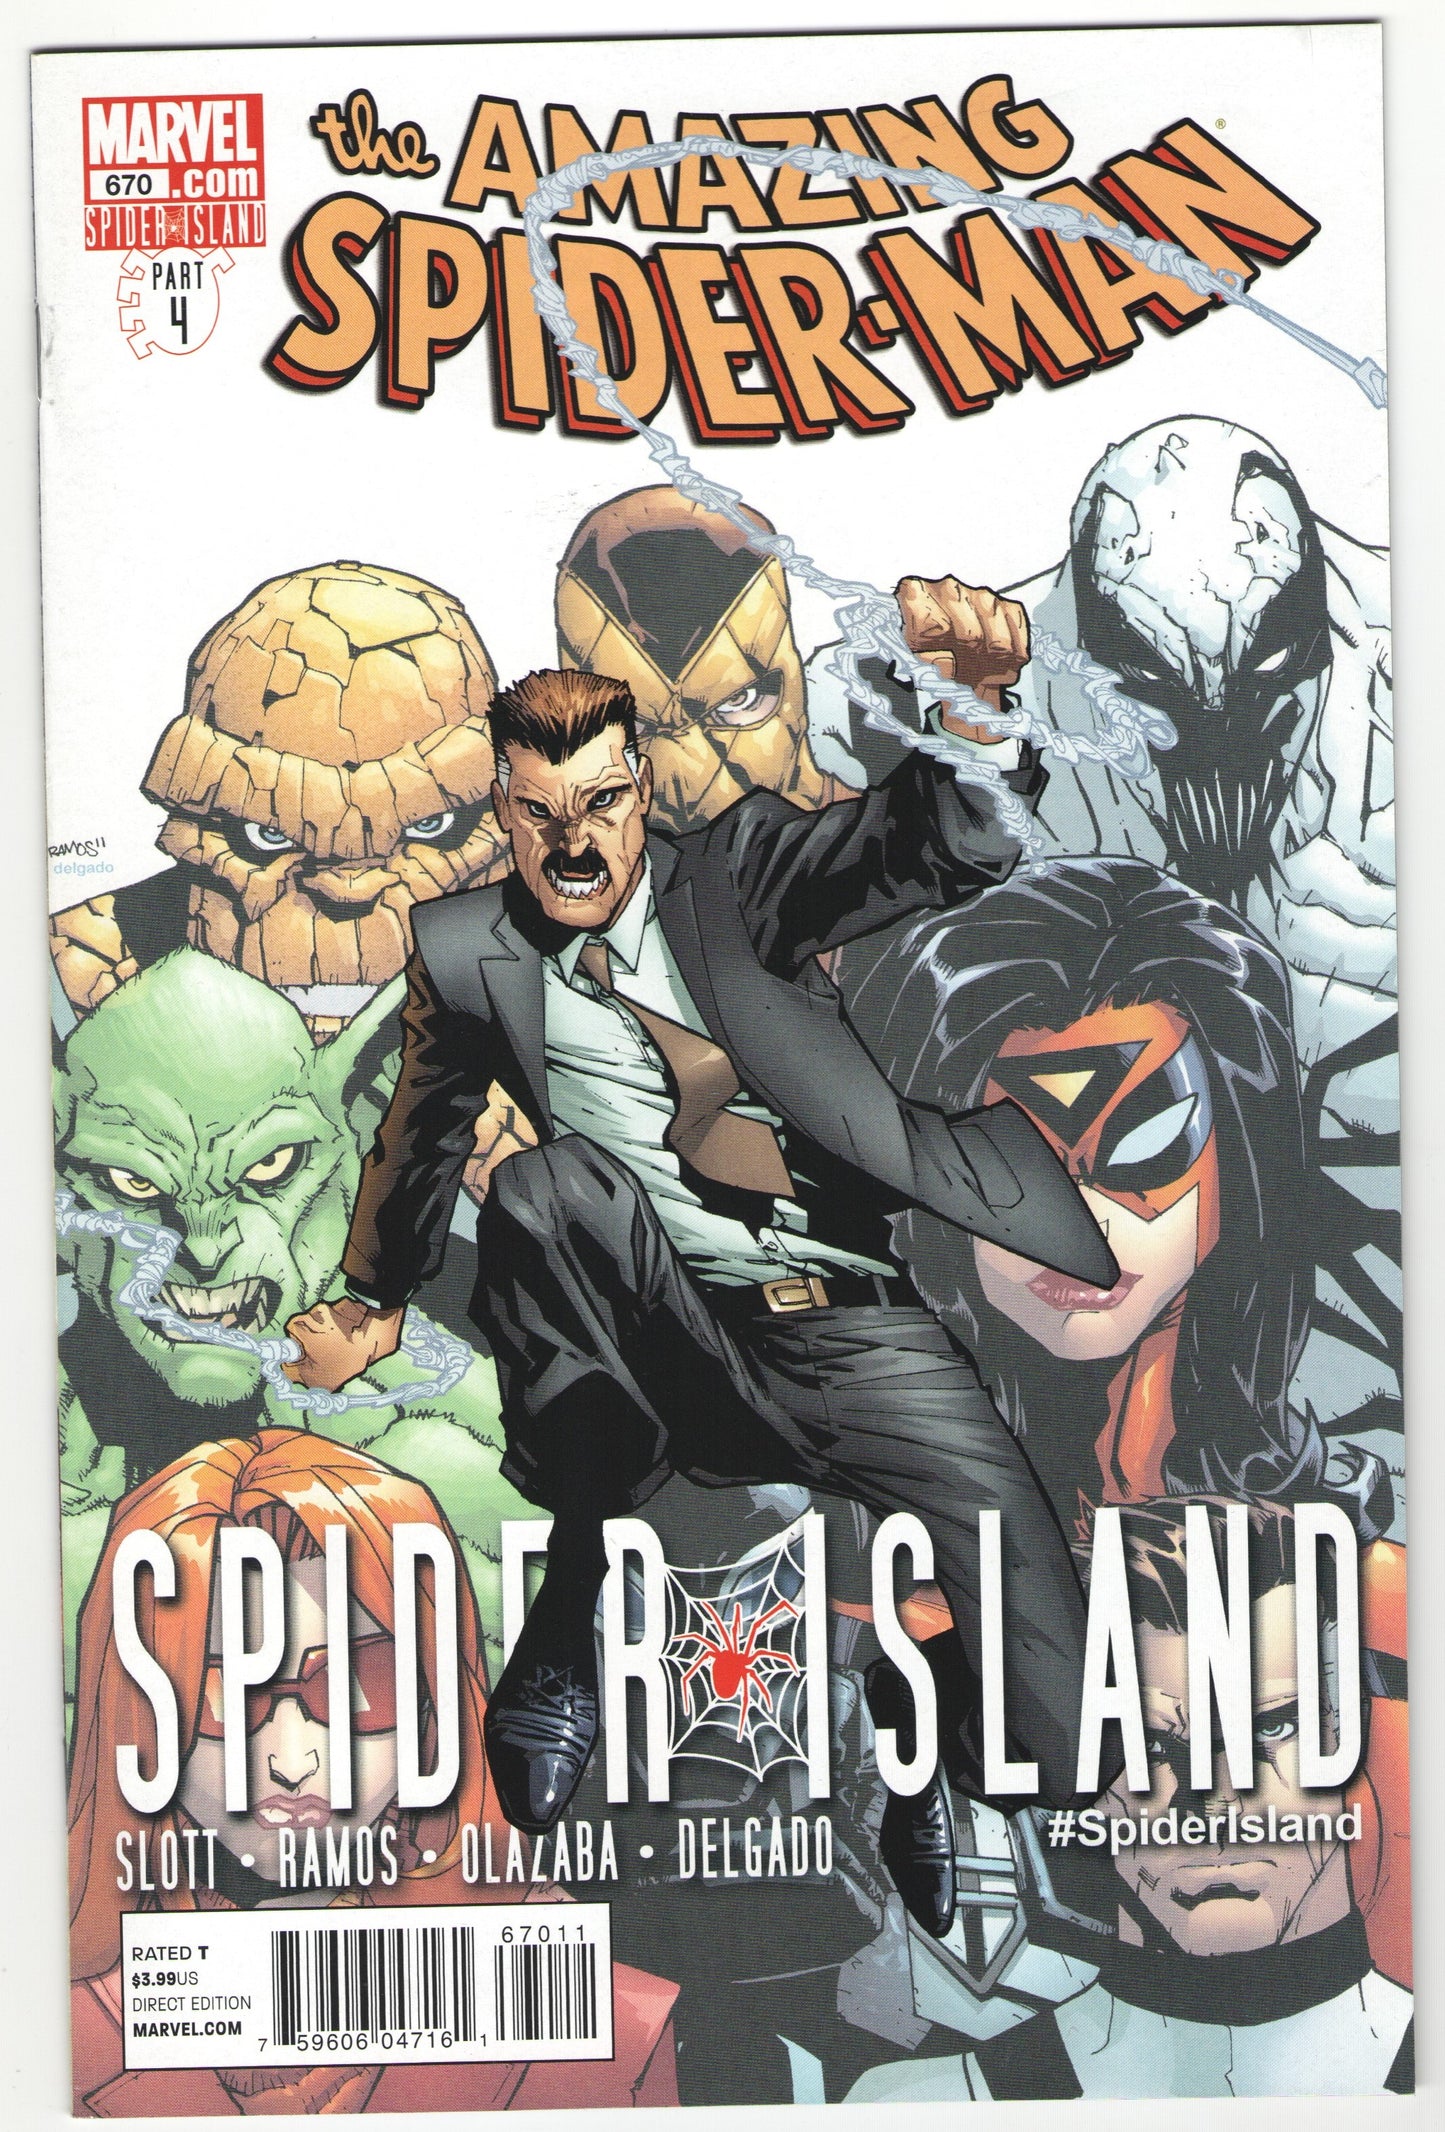 Amazing Spider-Man "Spider Island" Story Arc (2011)